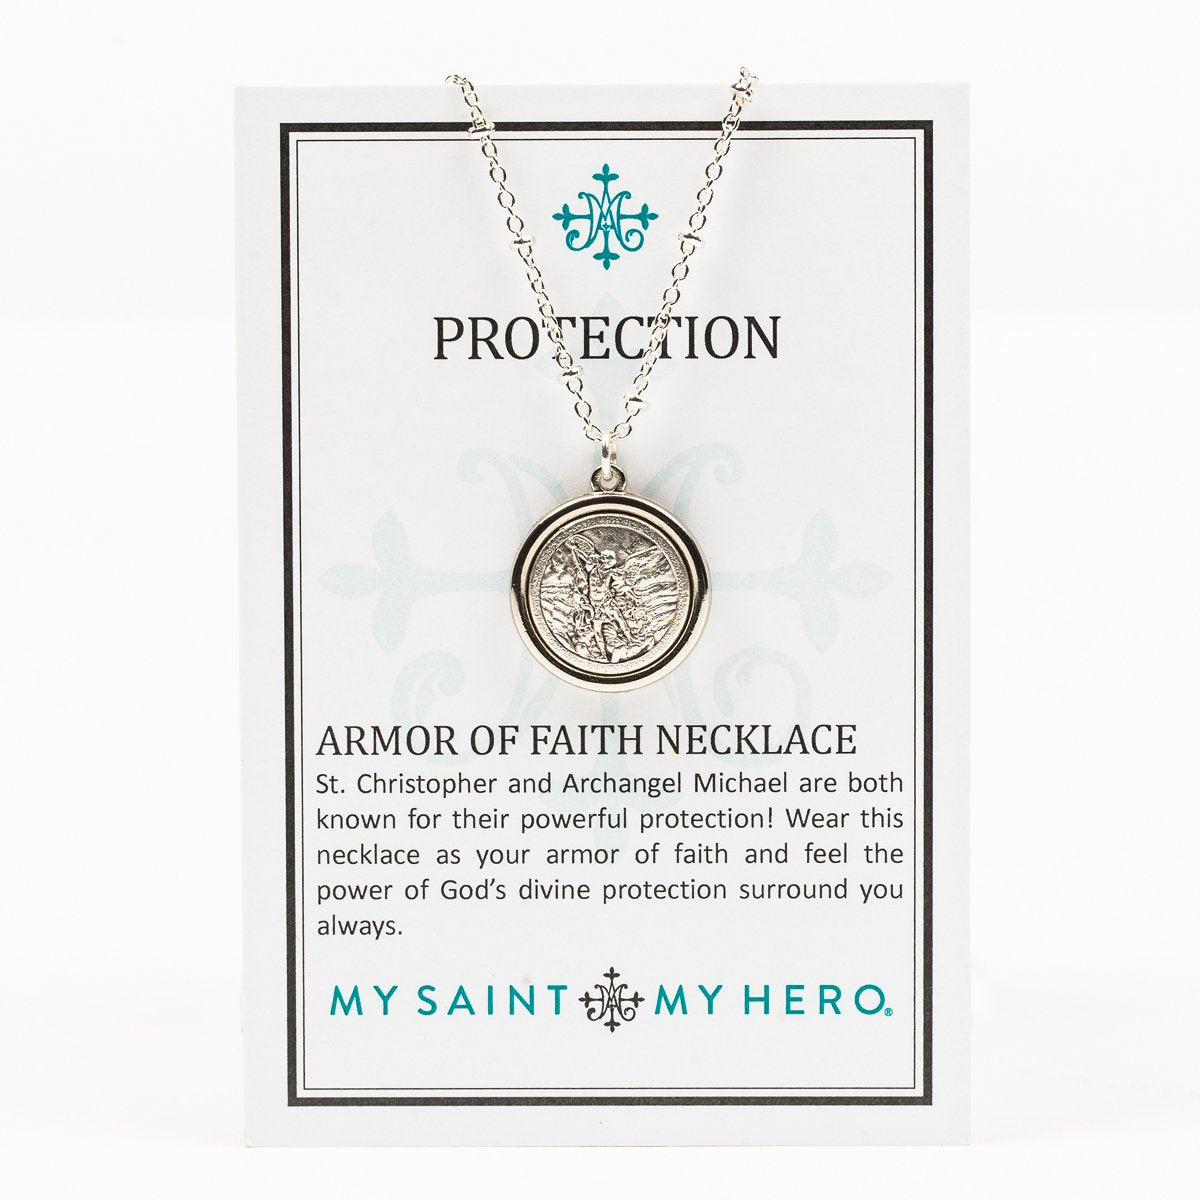 Armor of Faith Necklace on Inspirational Card